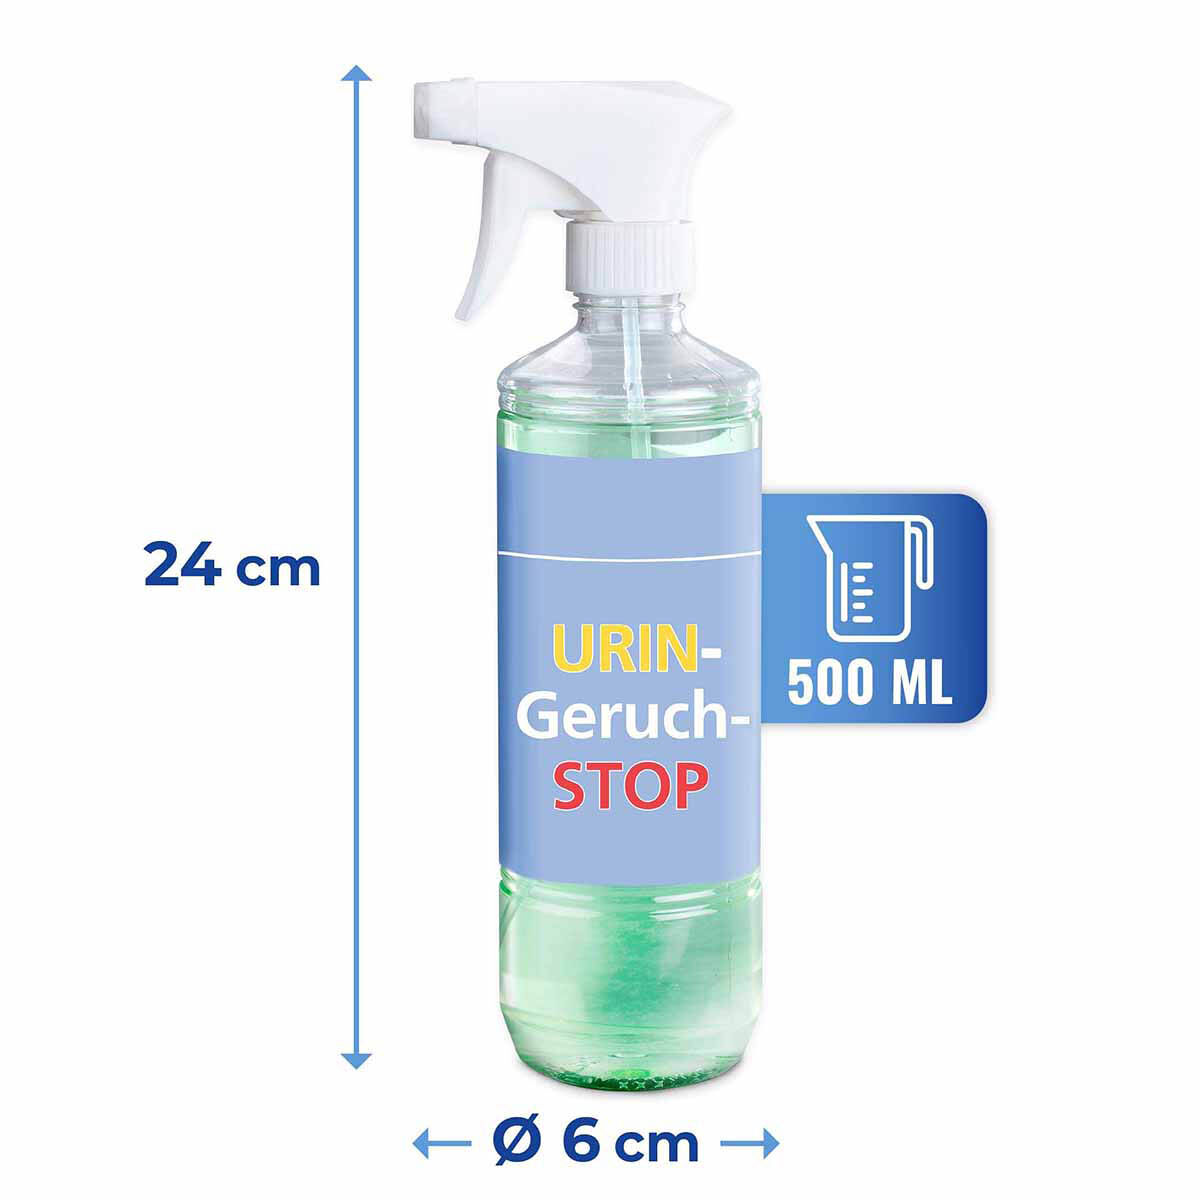 Urin-Geruch-Stopp Mensch 500ml, 2er